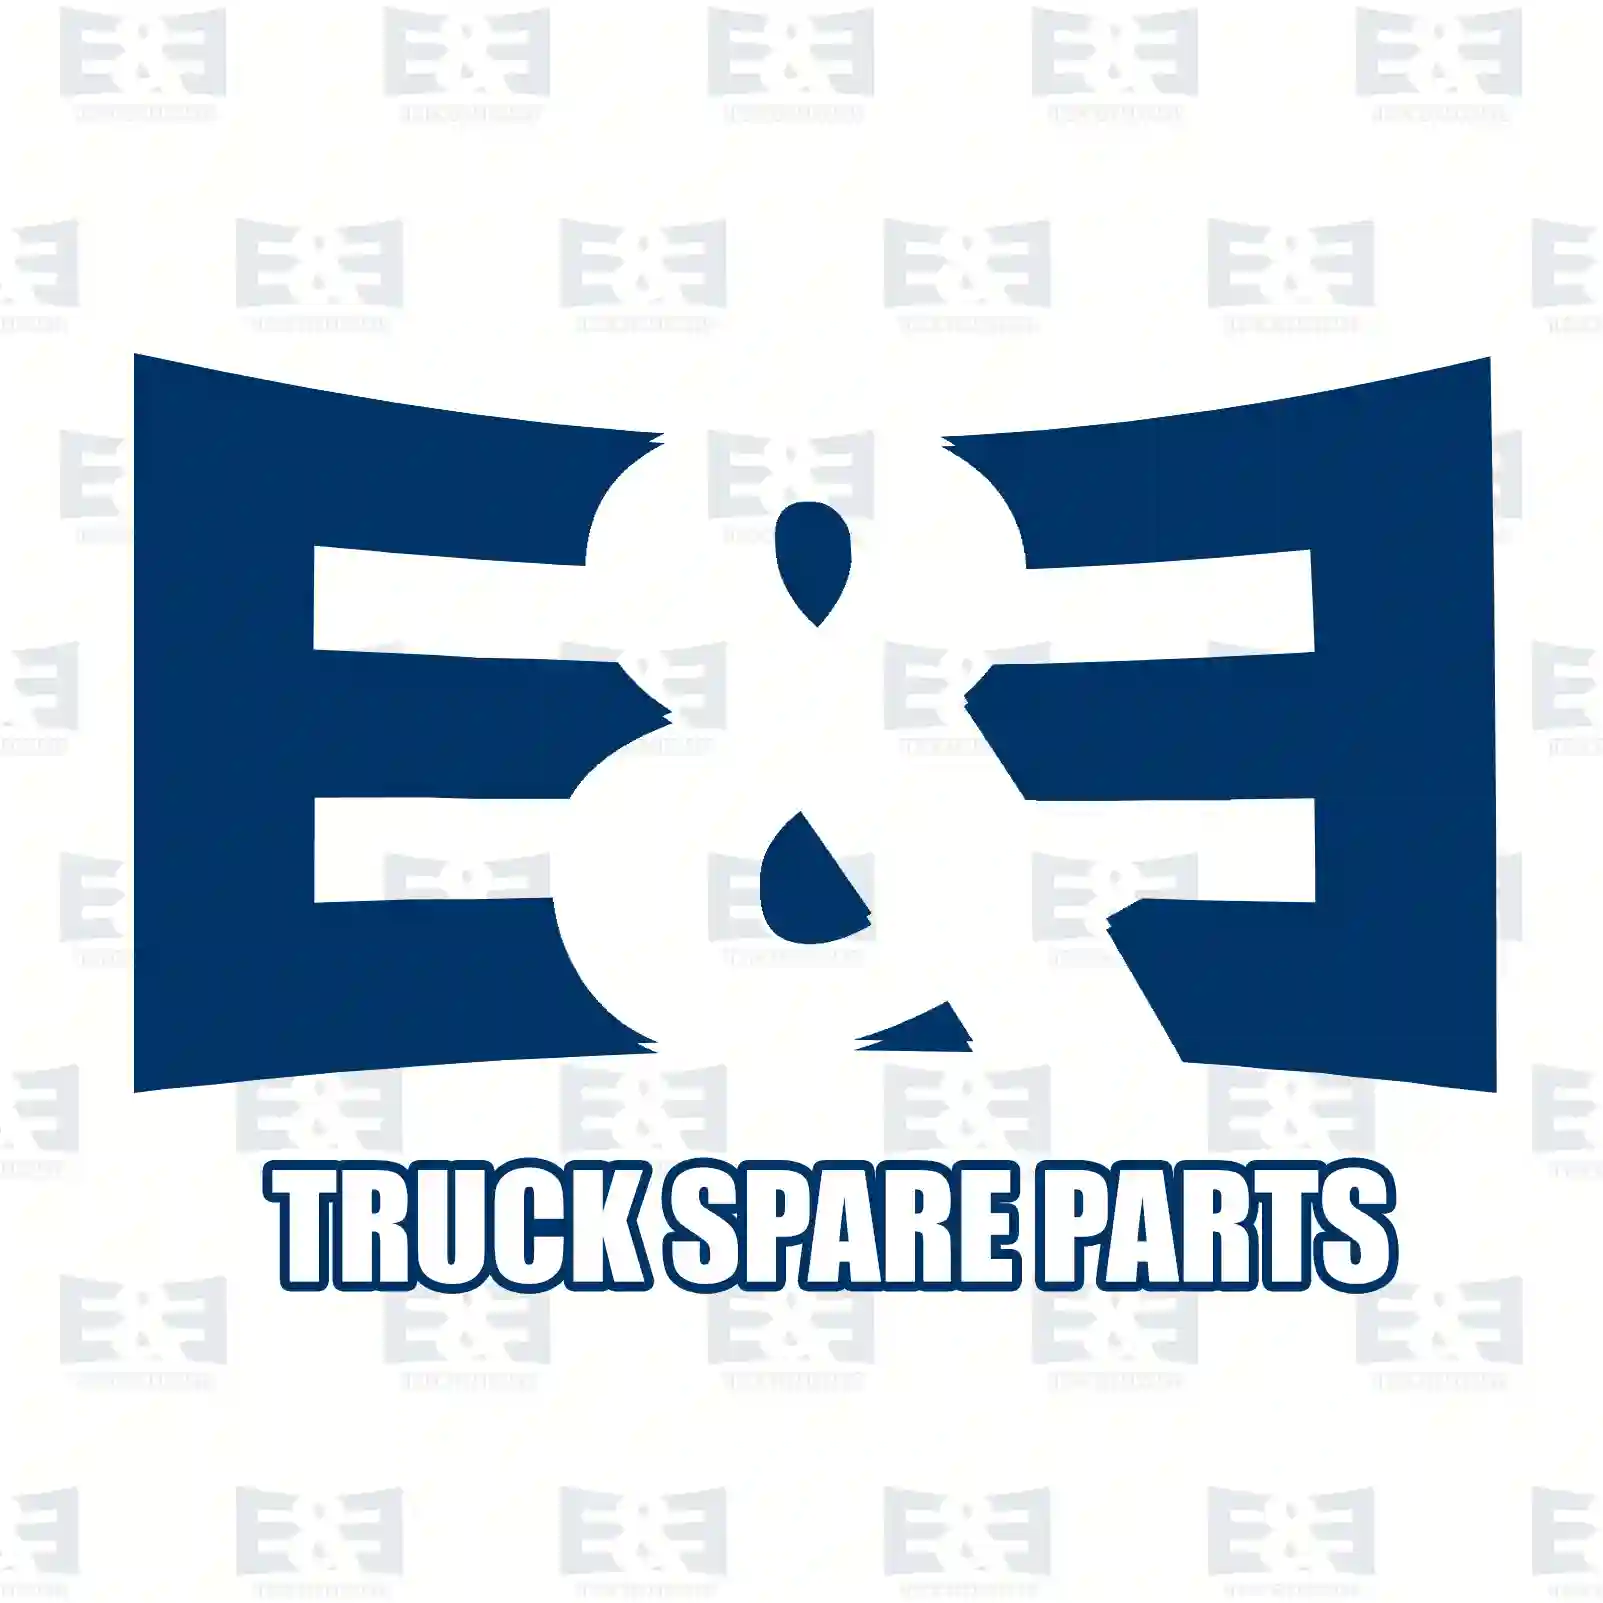 Overhaul kit, compressor, 2E2296493, #YOK ||  2E2296493 E&E Truck Spare Parts | Truck Spare Parts, Auotomotive Spare Parts Overhaul kit, compressor, 2E2296493, #YOK ||  2E2296493 E&E Truck Spare Parts | Truck Spare Parts, Auotomotive Spare Parts